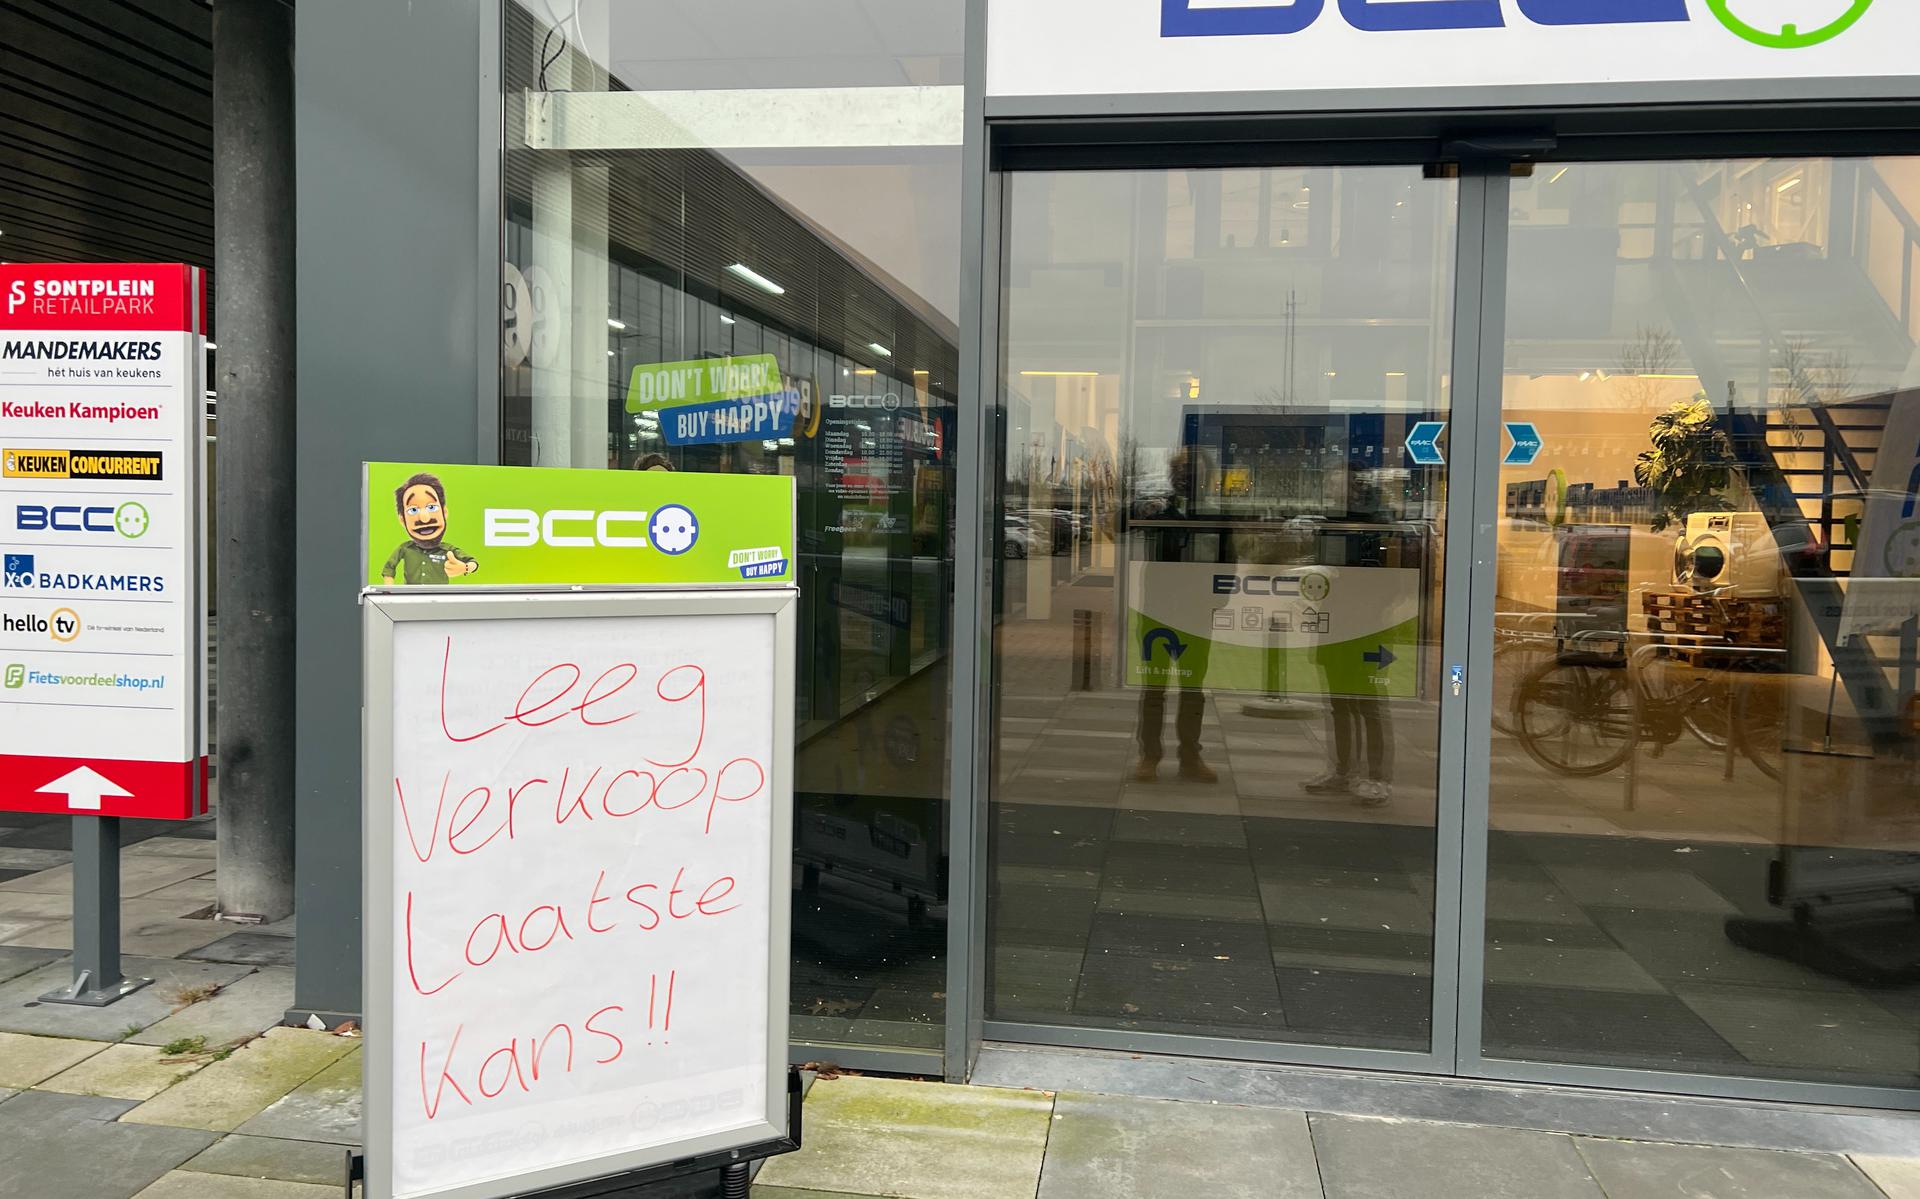 Elektronicazaak BCC aan Sontplein in Groningen gaat dicht.